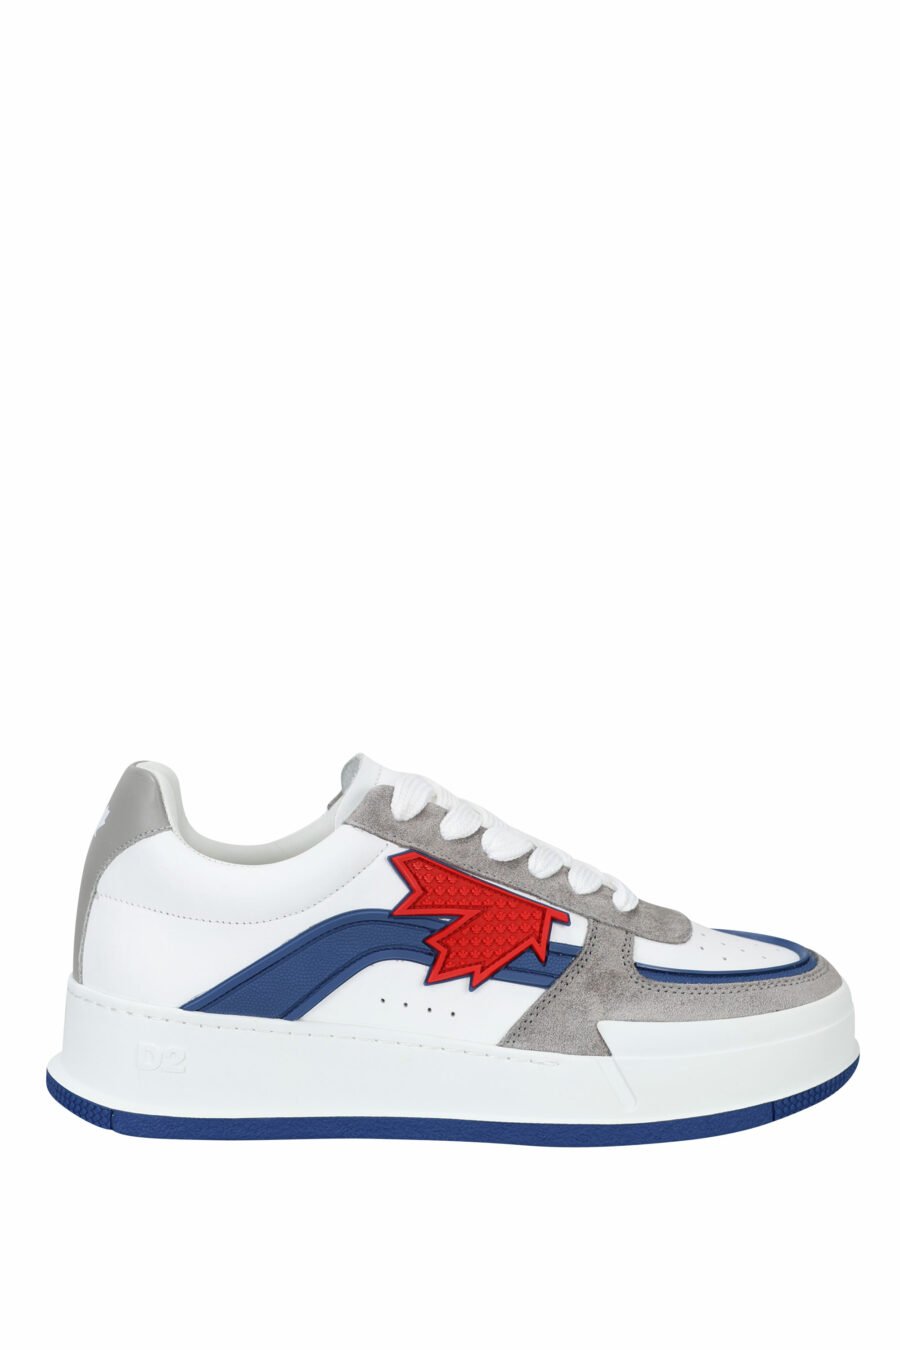 Zapatillas blancas mix con gris, azul y logo hoja roja - 8055777242216